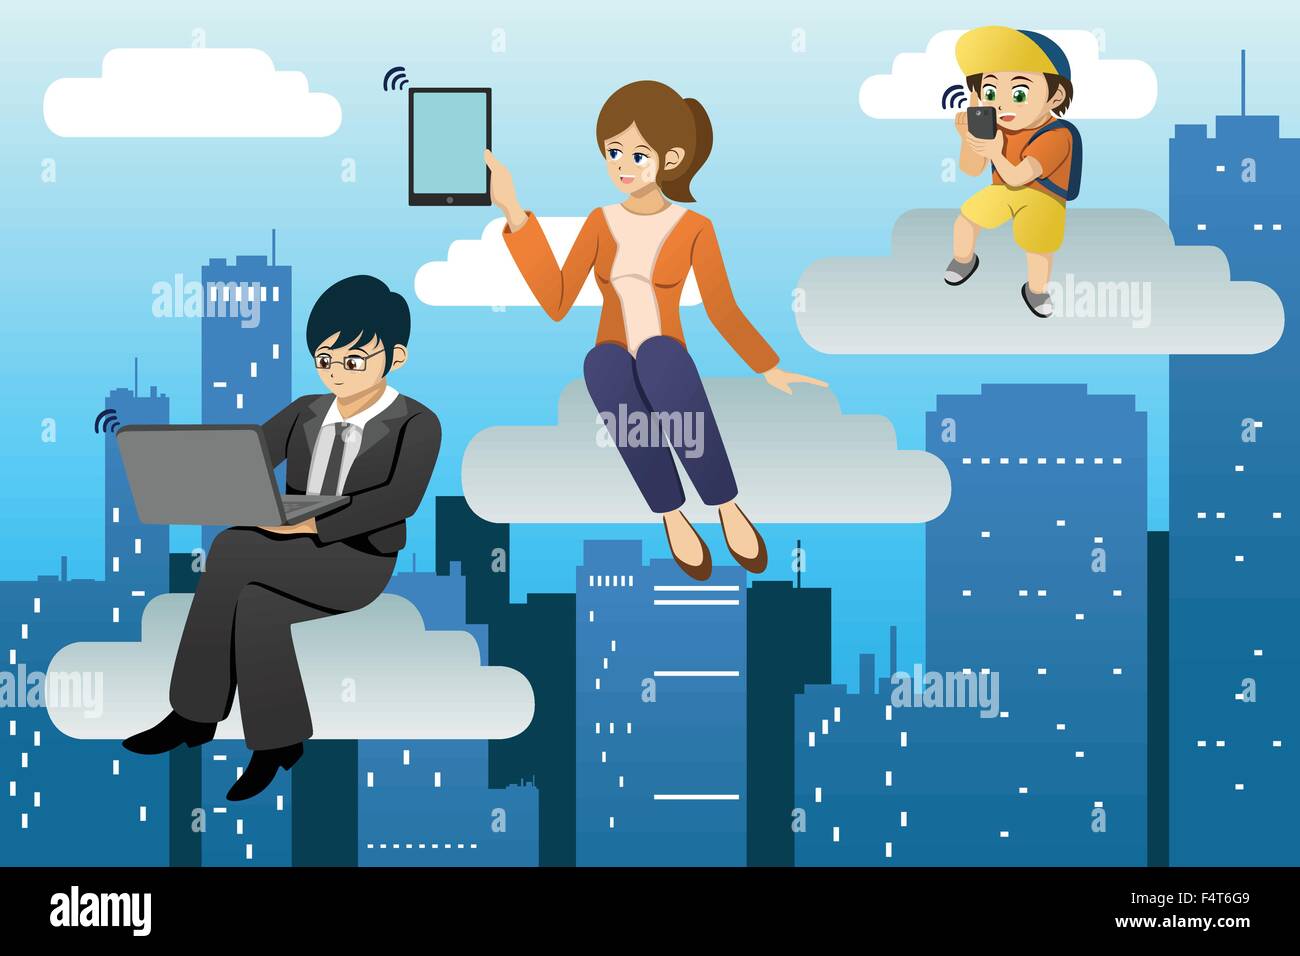 Un vecteur illustration de personnes utilisant différents appareil mobile dans l'environnement informatique des nuages Illustration de Vecteur